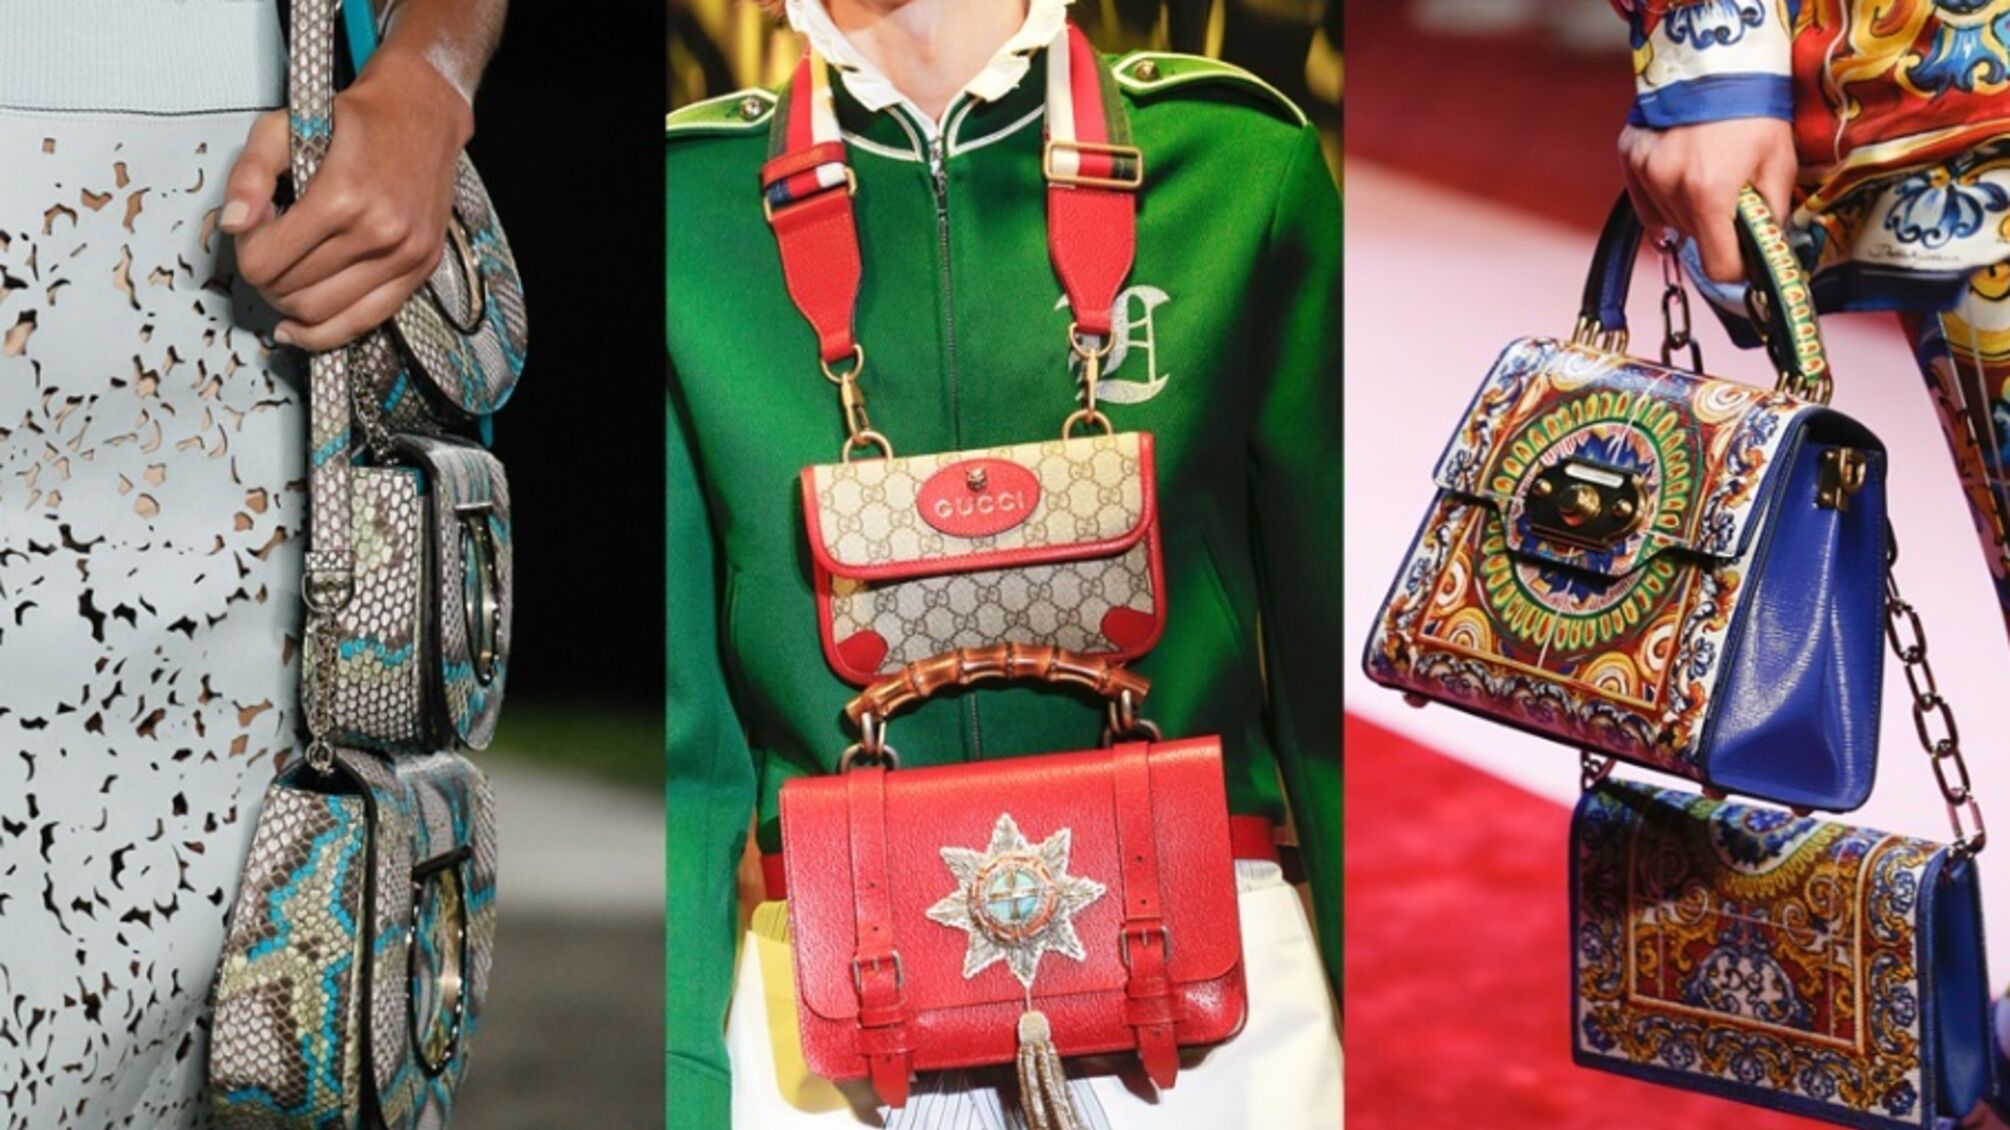  У світі моди набуває популярності новий тренд: дві сумки в одні руки